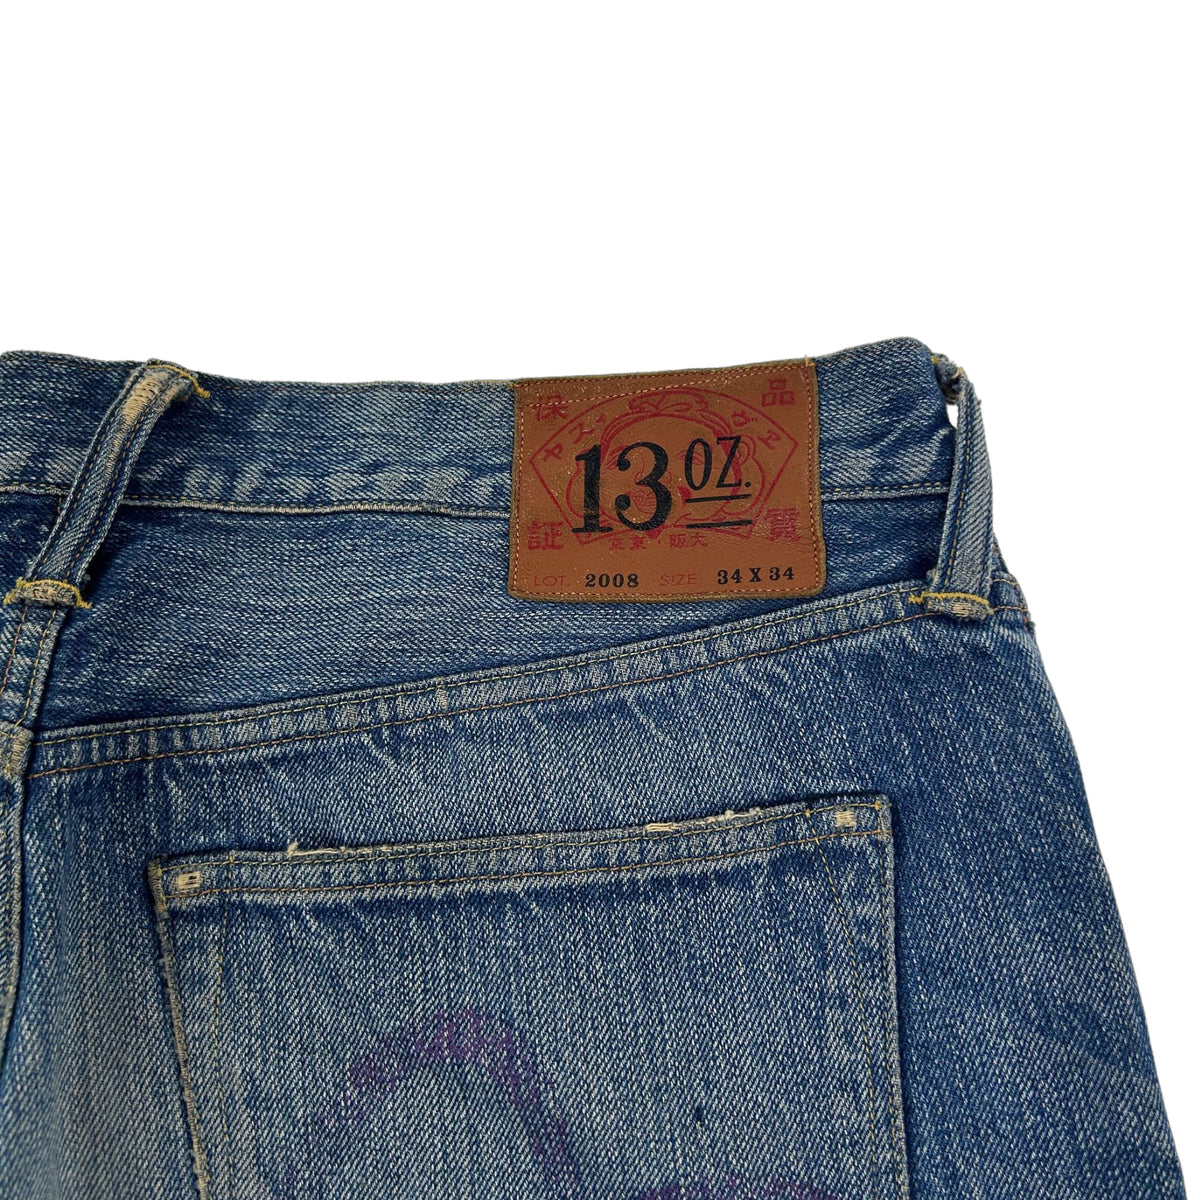 Vintage Evisu Painted Denim Jeans Size W34